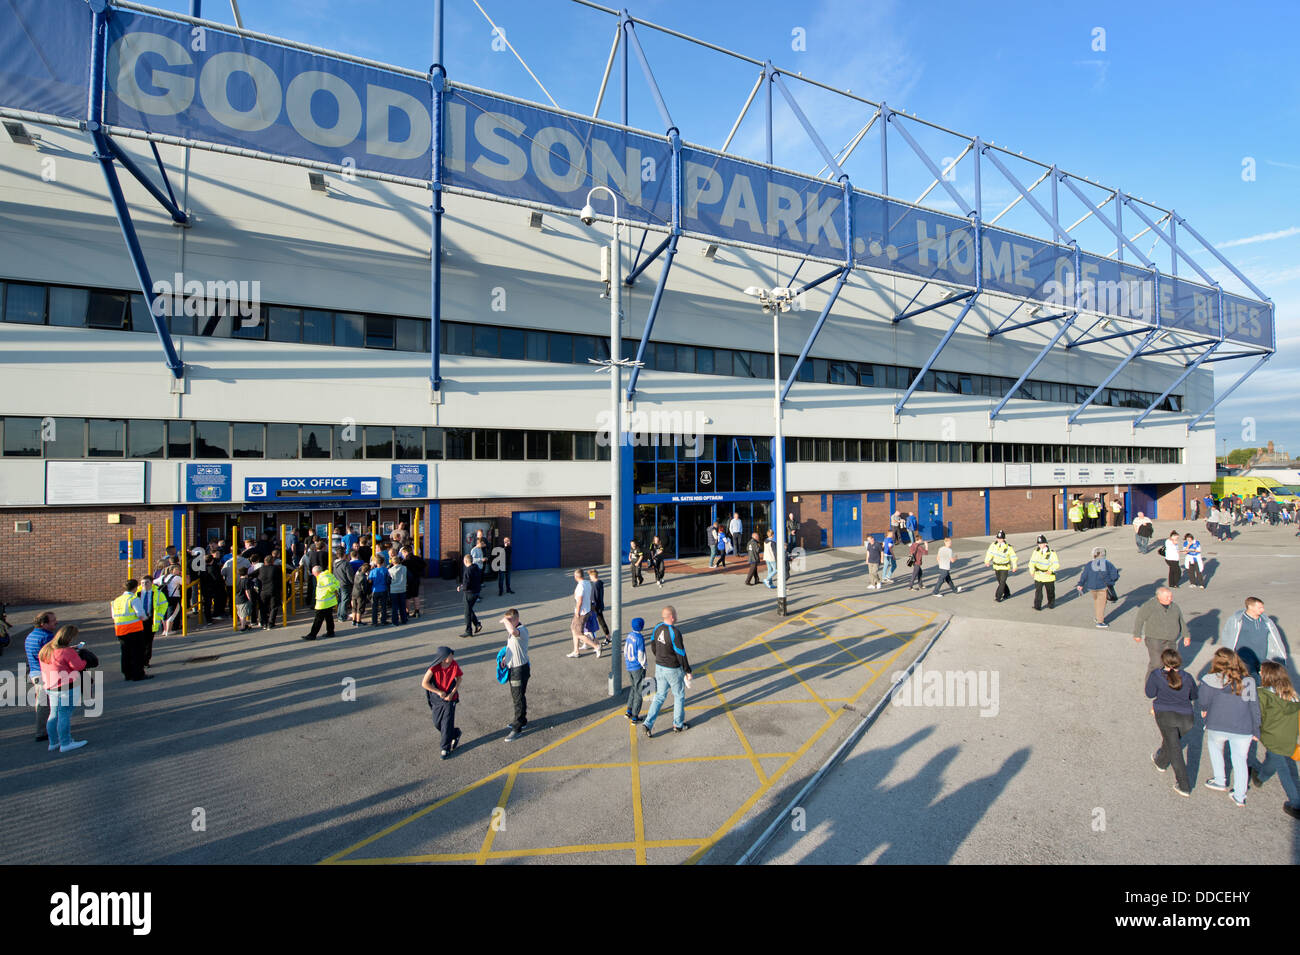 Eine Weitwinkeleinstellung des Goodison Park-Stadion, Heimat des FC Everton Football Club (nur zur redaktionellen Verwendung). Stockfoto